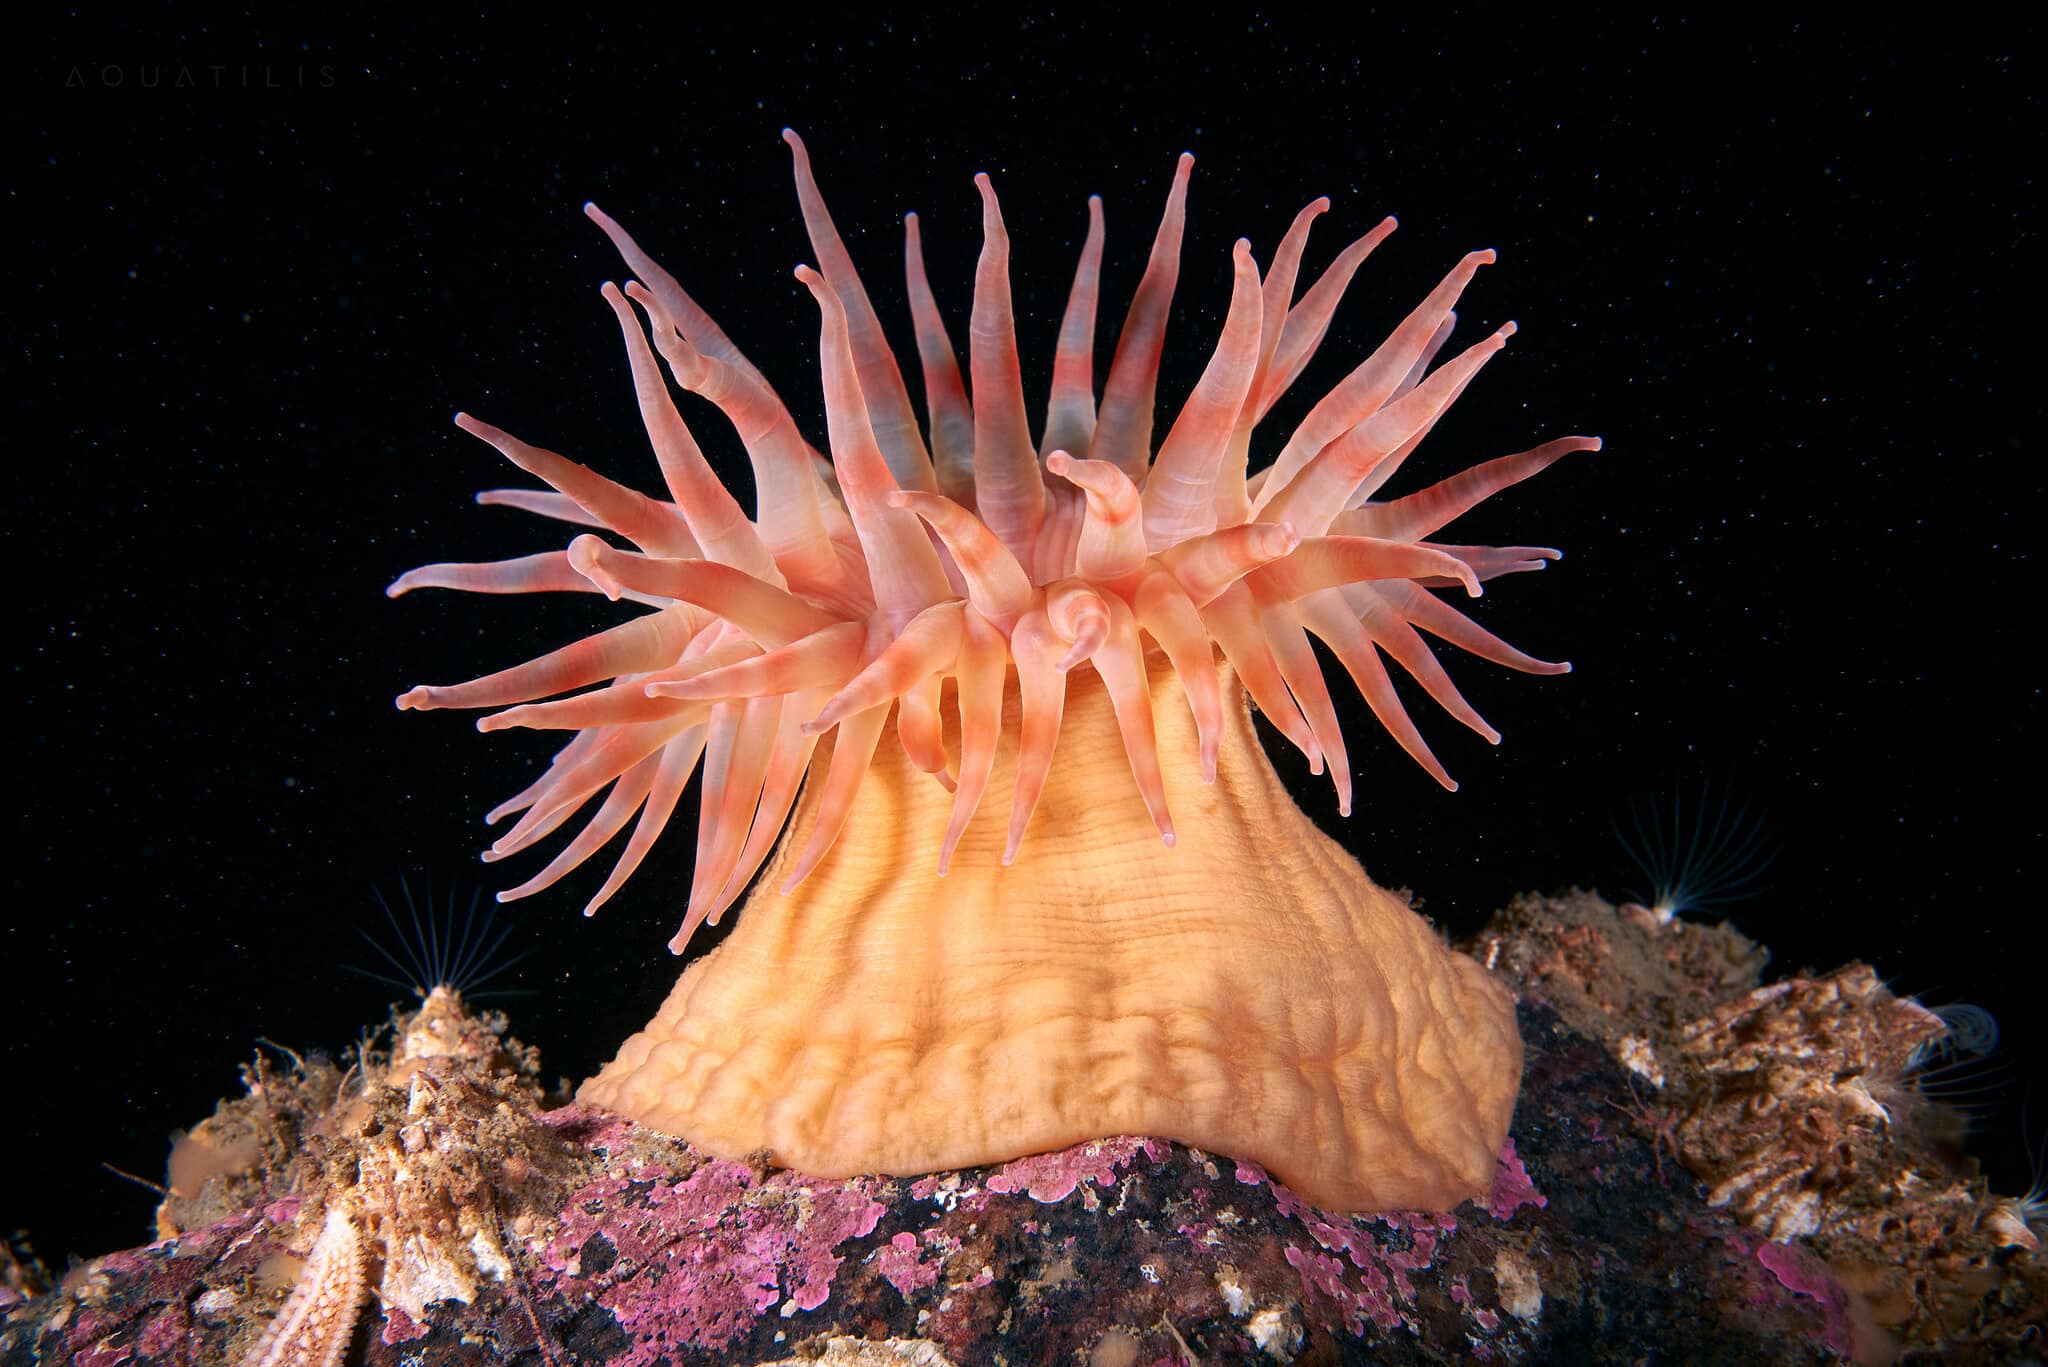 снимки удивительных существ из глубин мирового океана, фото 11